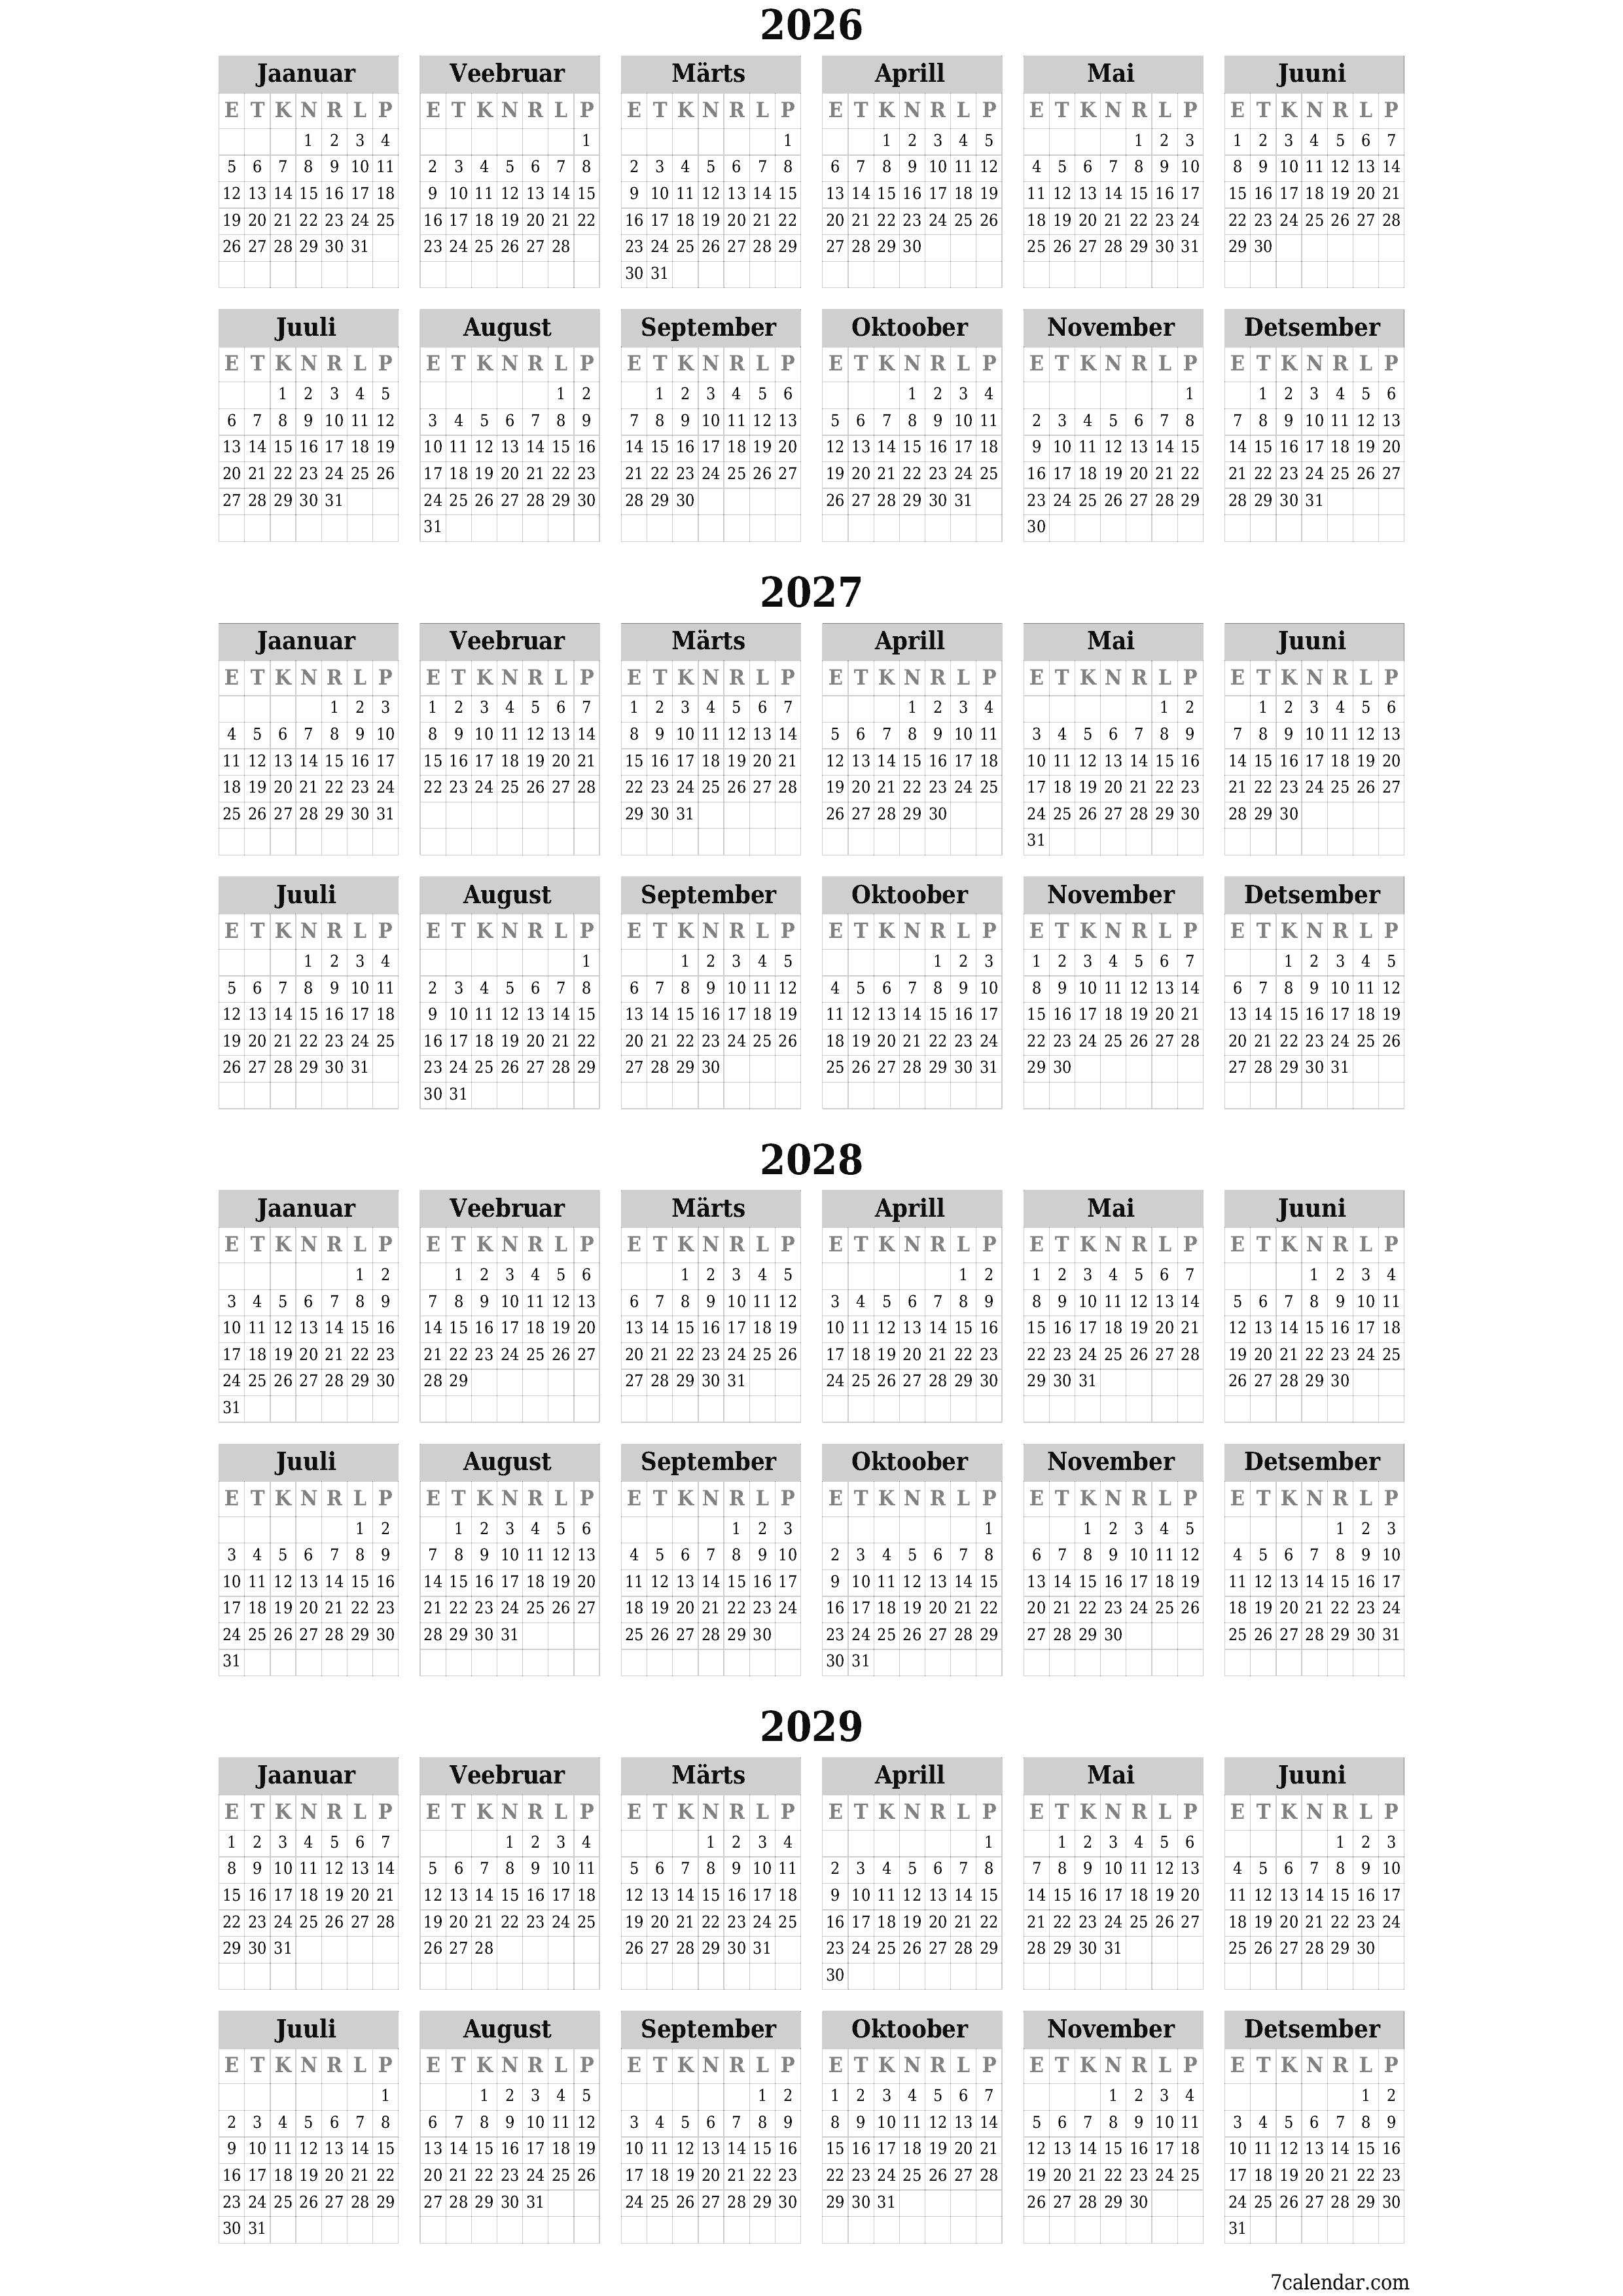 prinditav seina kalendri mall tasuta vertikaalne Iga-aastane kalender Veebruar (Veebr) 2026